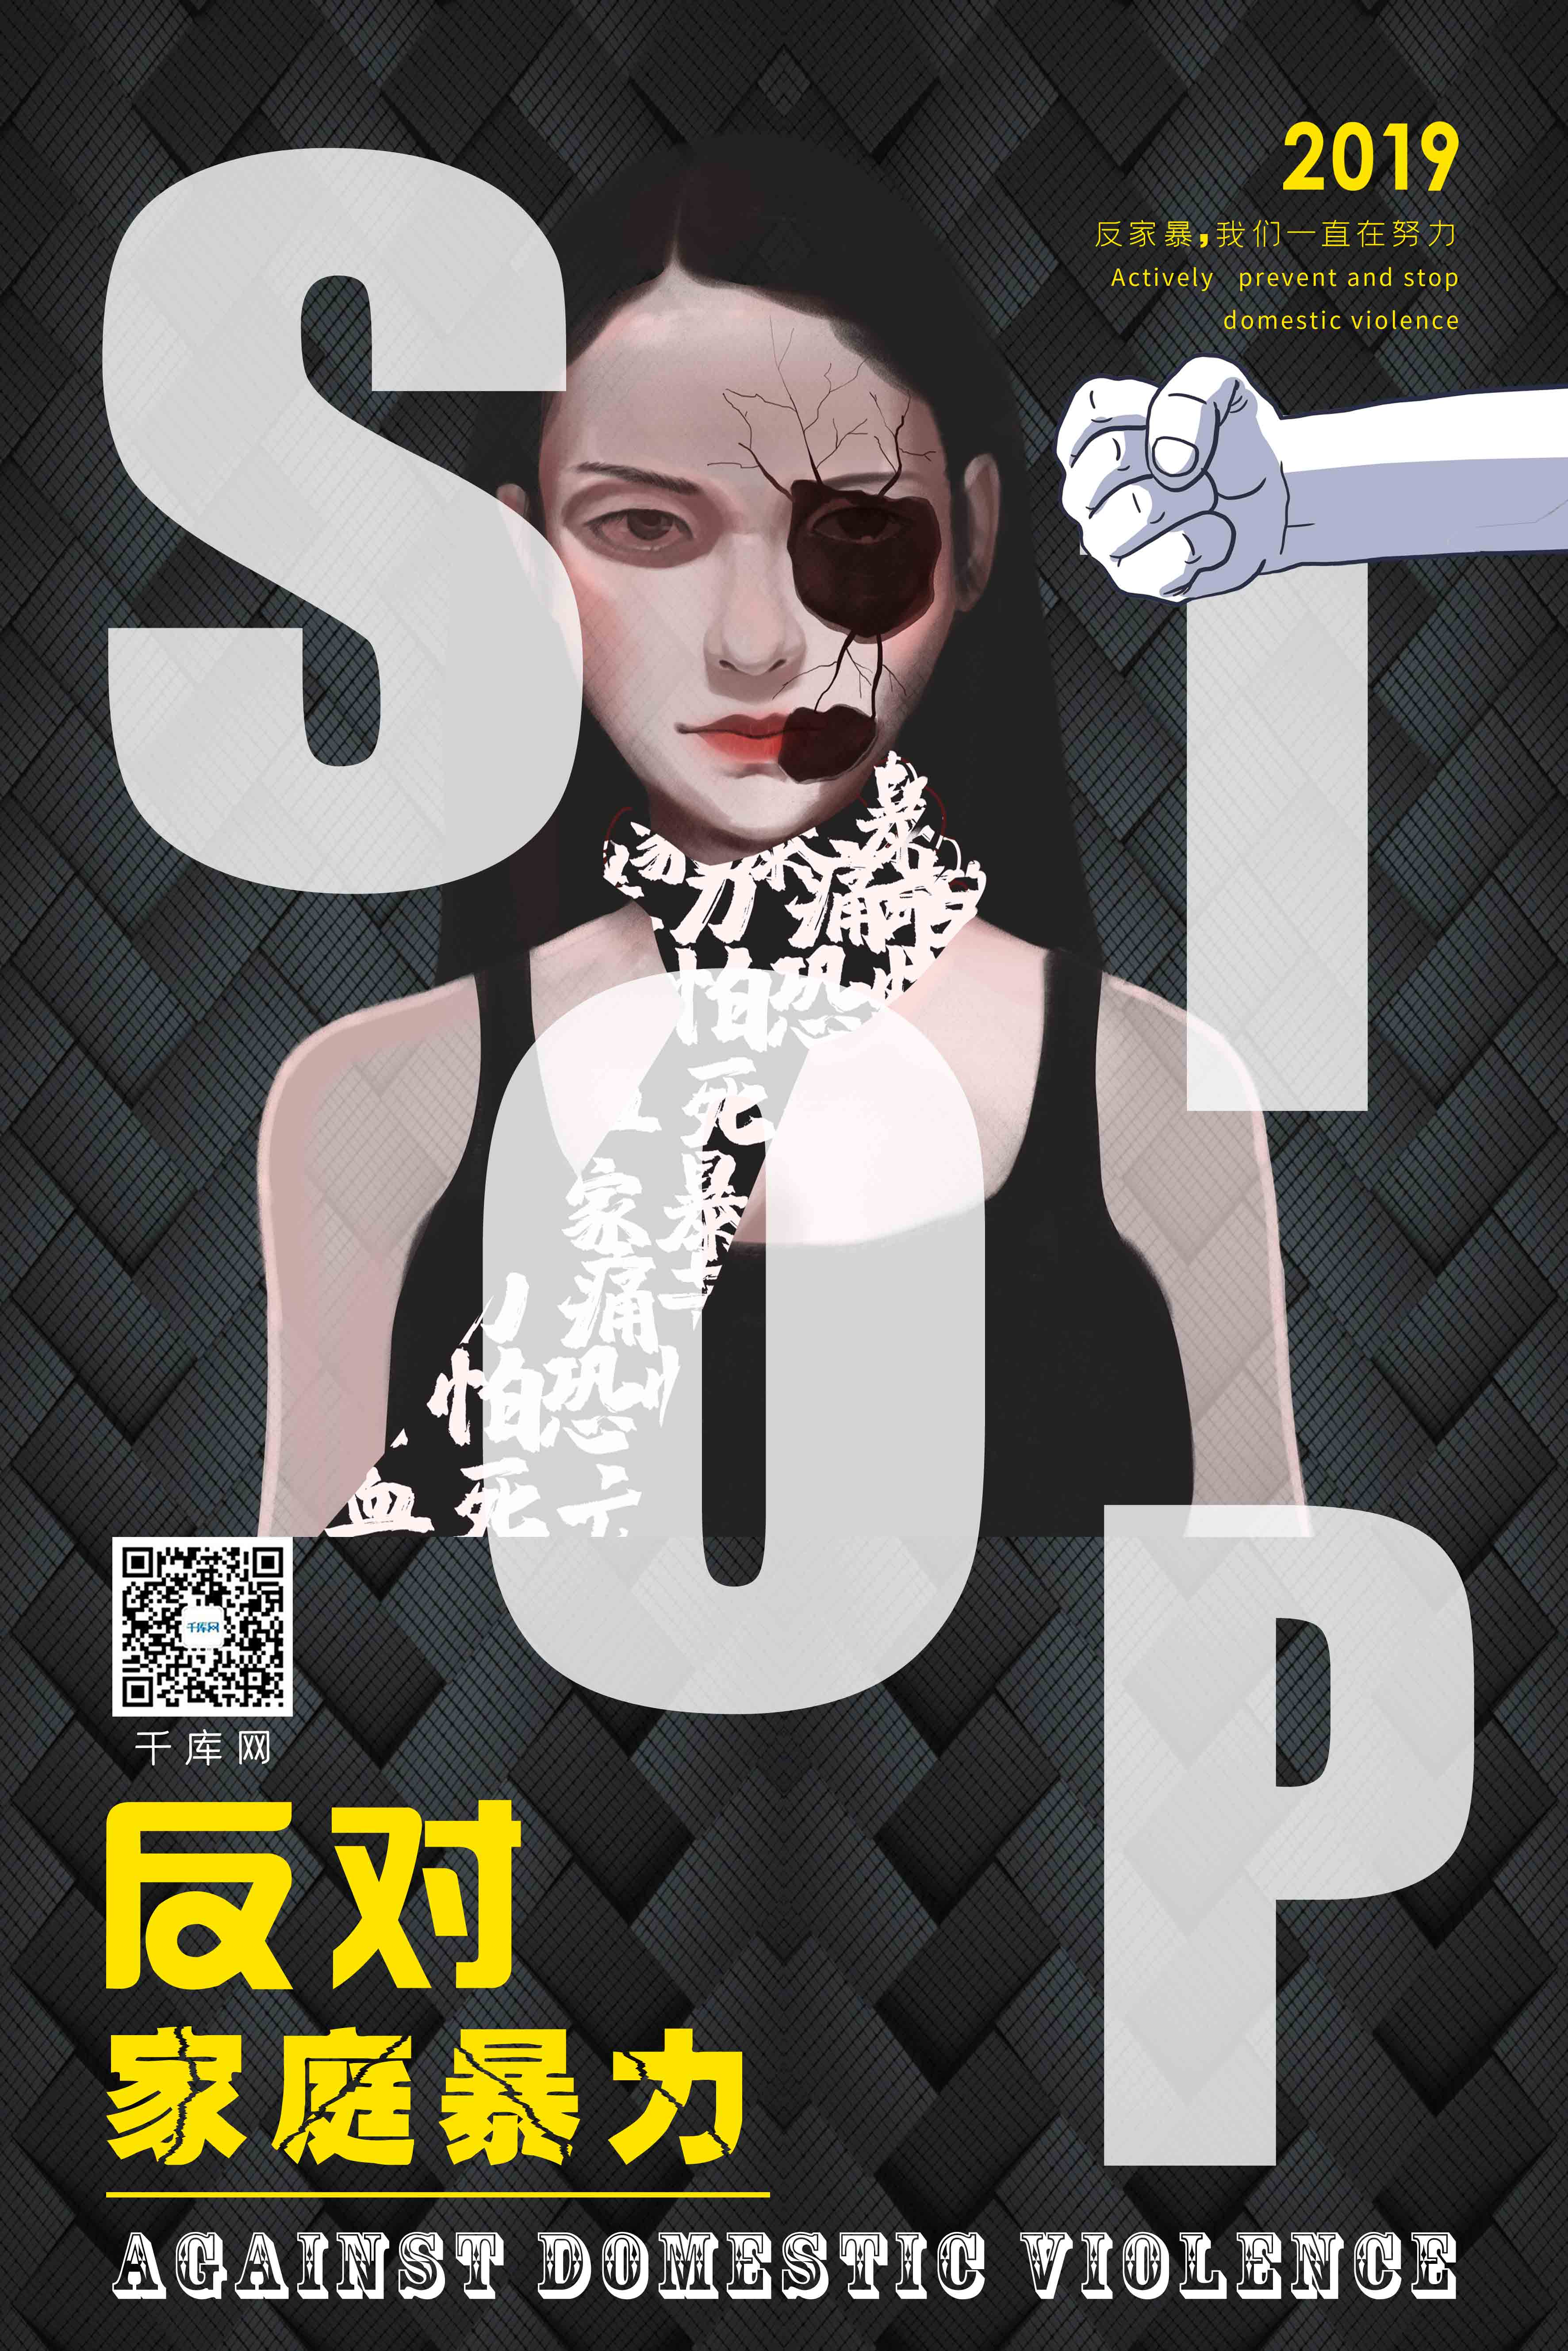 暗黑色编织纹背景反对家庭暴力海报图片